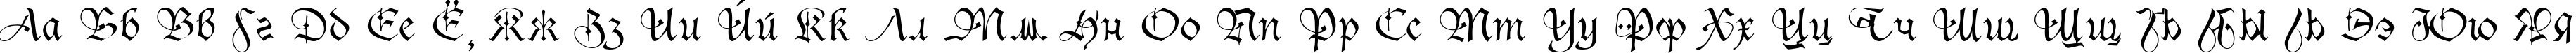 Пример написания русского алфавита шрифтом Sanasoft Gothic.kz